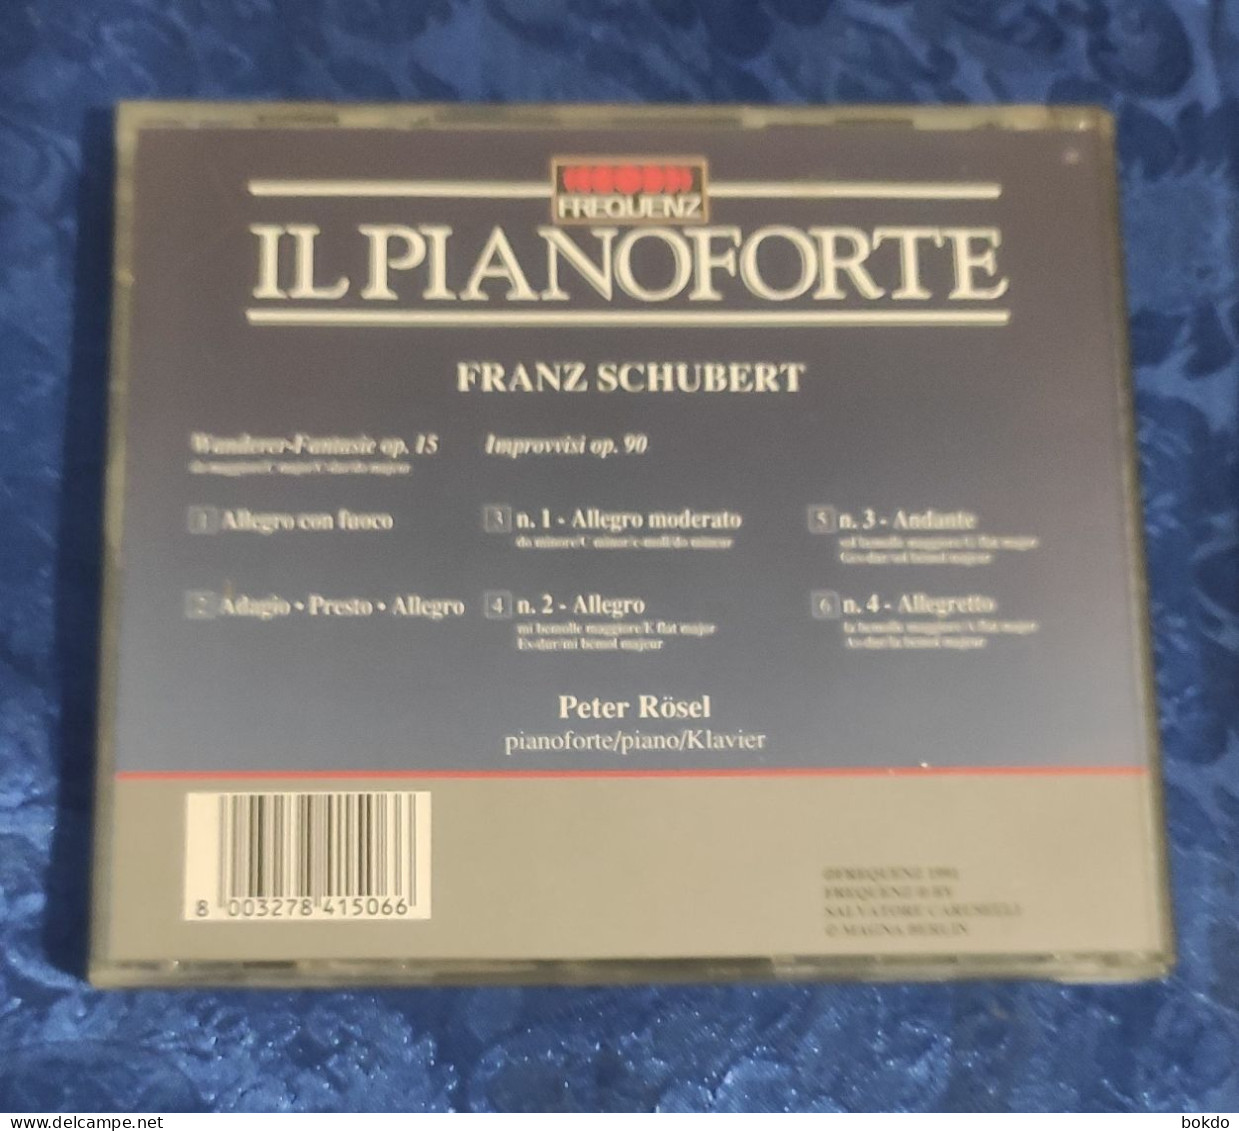 IL PIANOFORTE - Franz Schubert - Classical